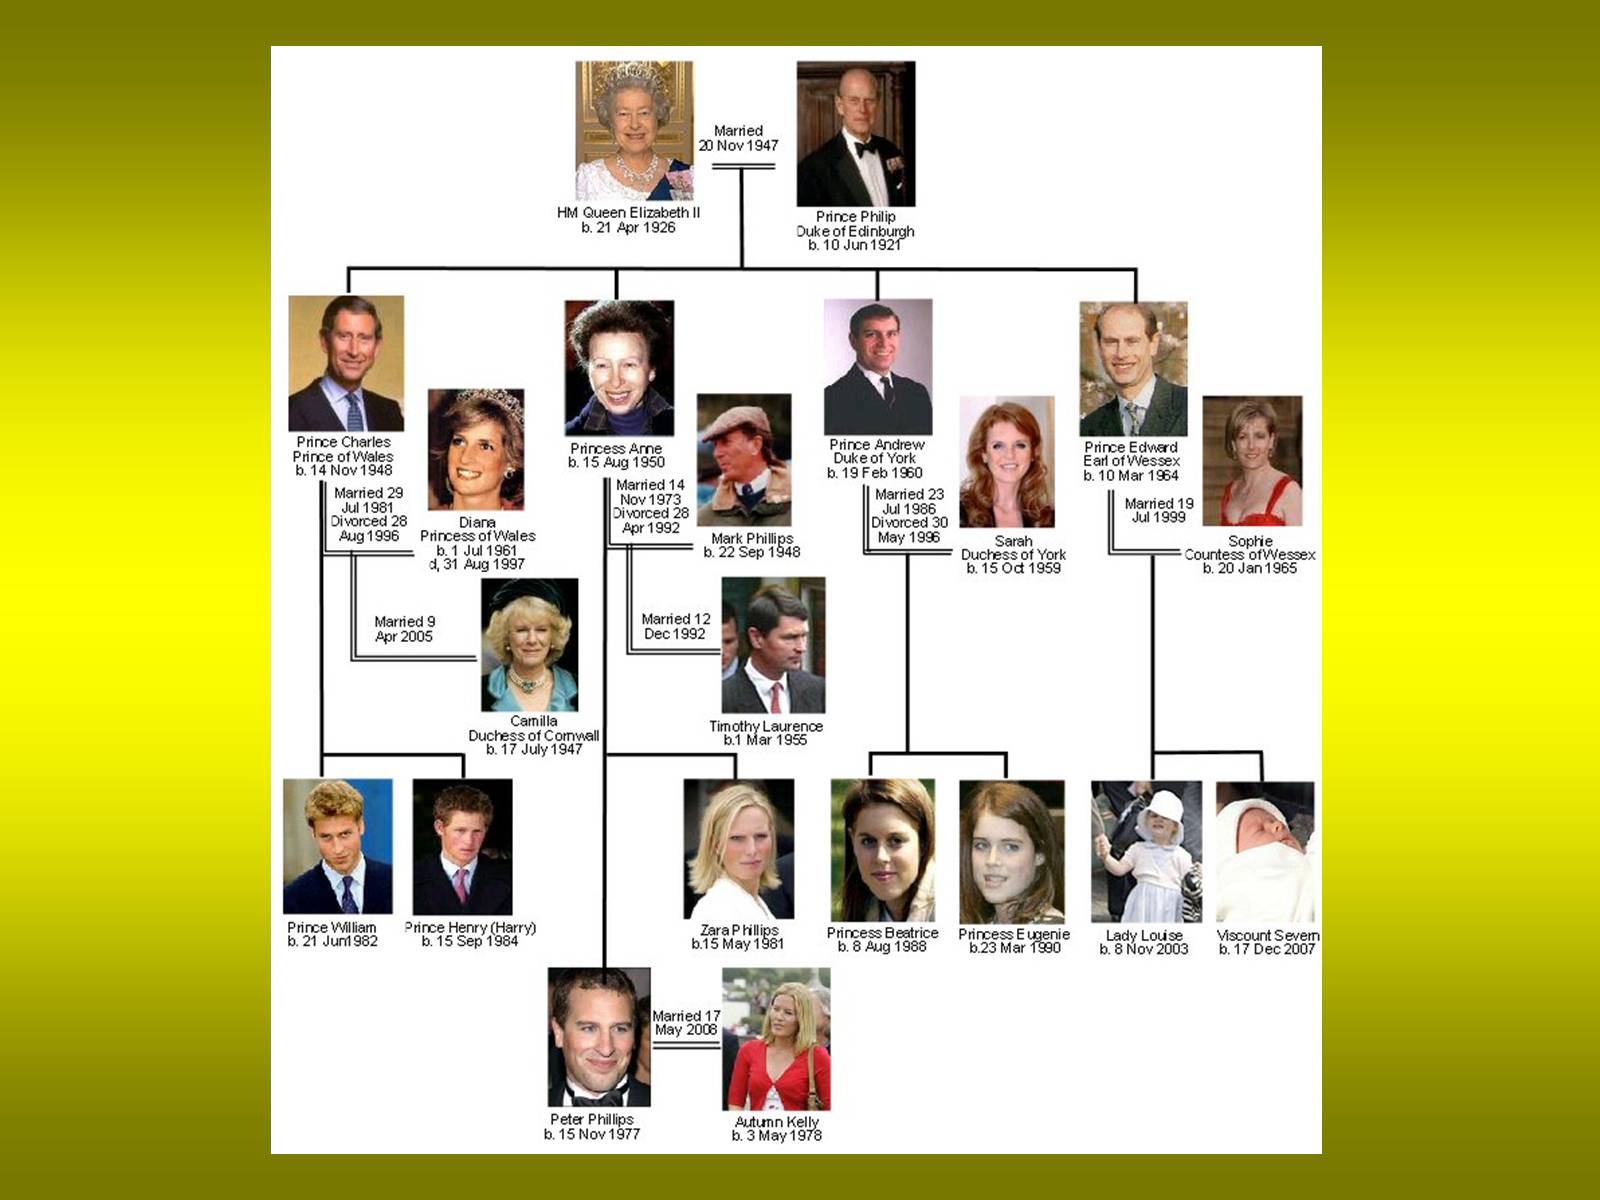 королевская семья великобритании древо на русском